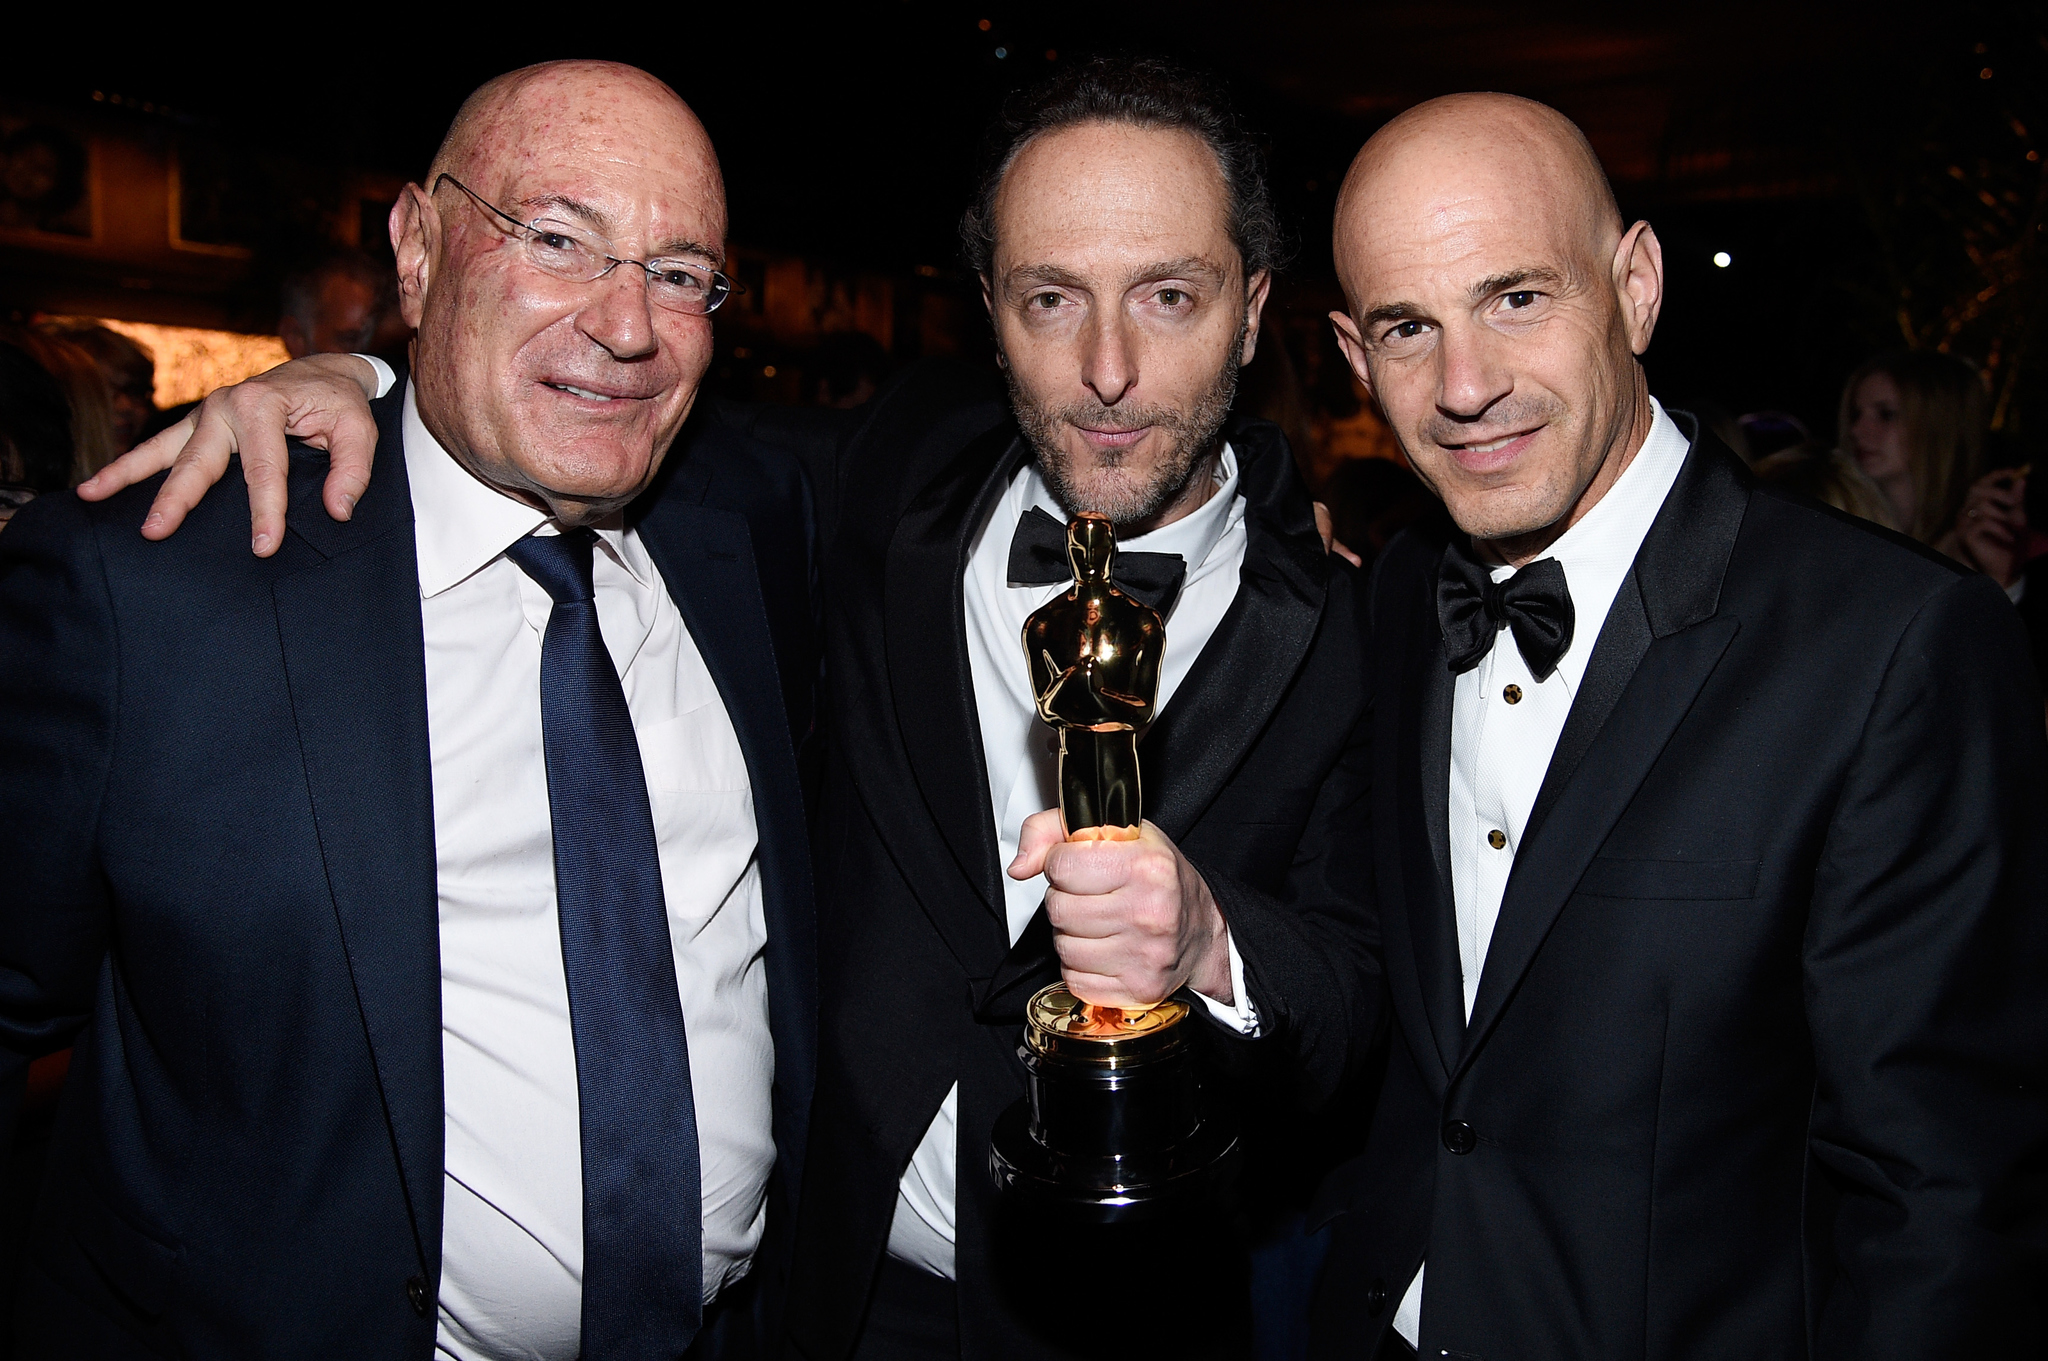 Emmanuel Lubezki, Arnon Milchan and Brad Weston at event of The Oscars (2015)